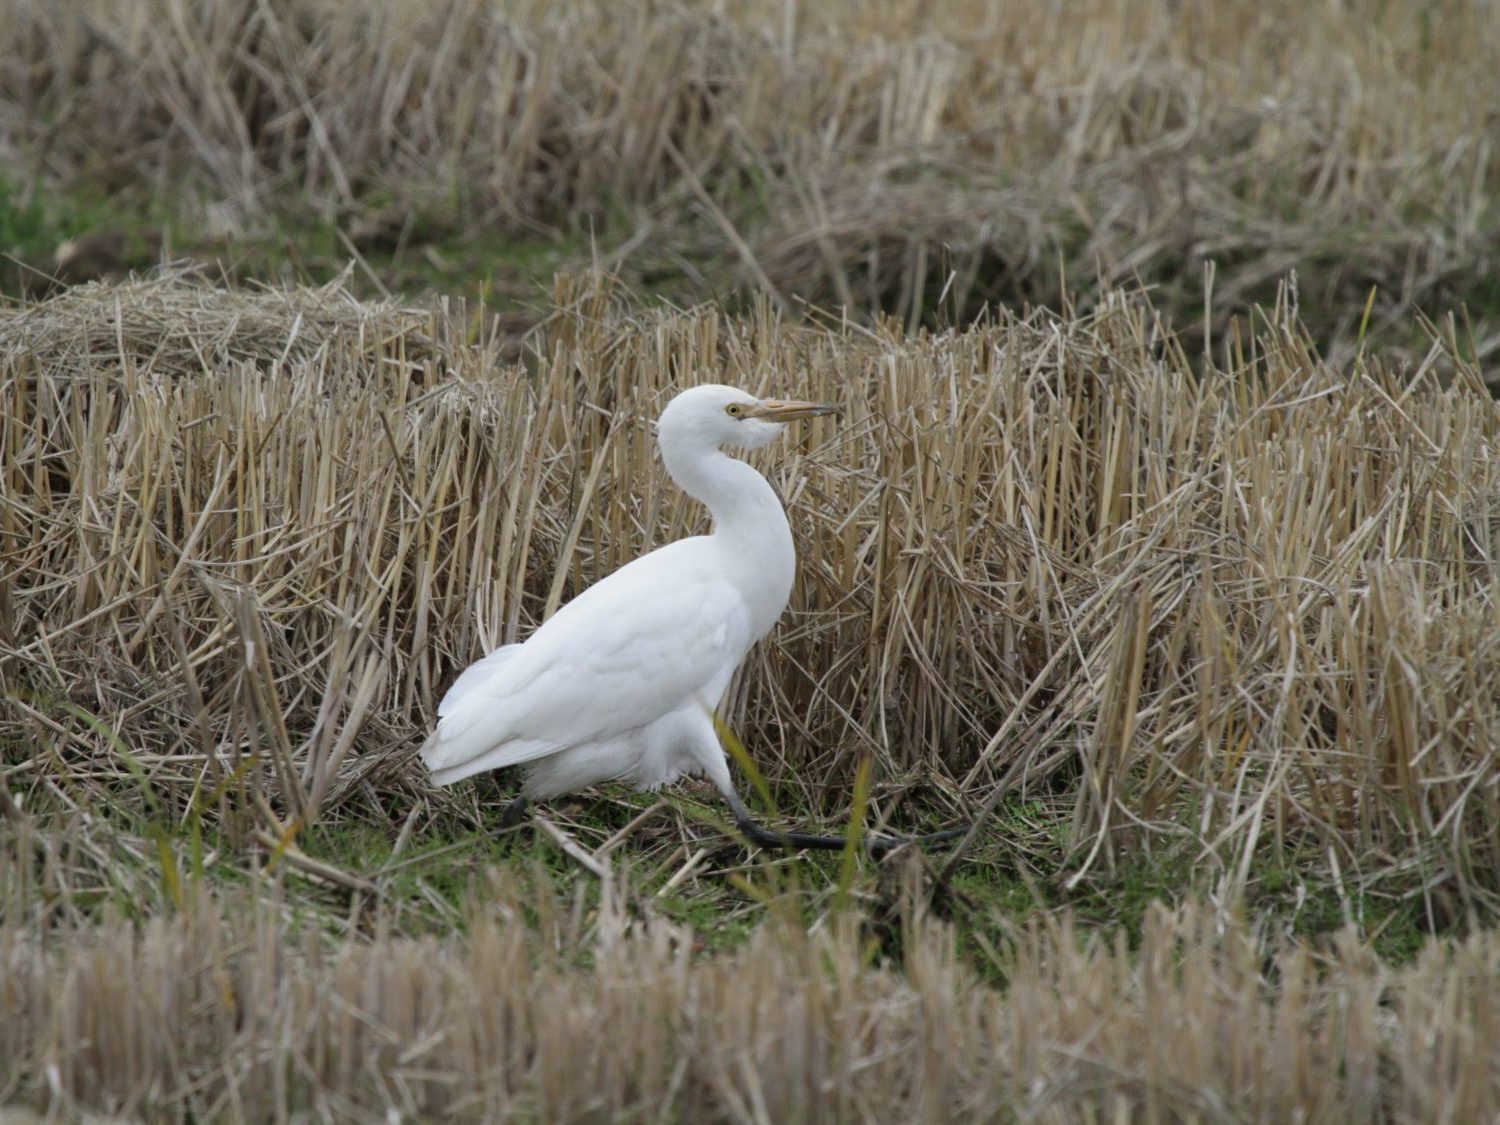 Great White Egret striding through cut grass in Extremadura